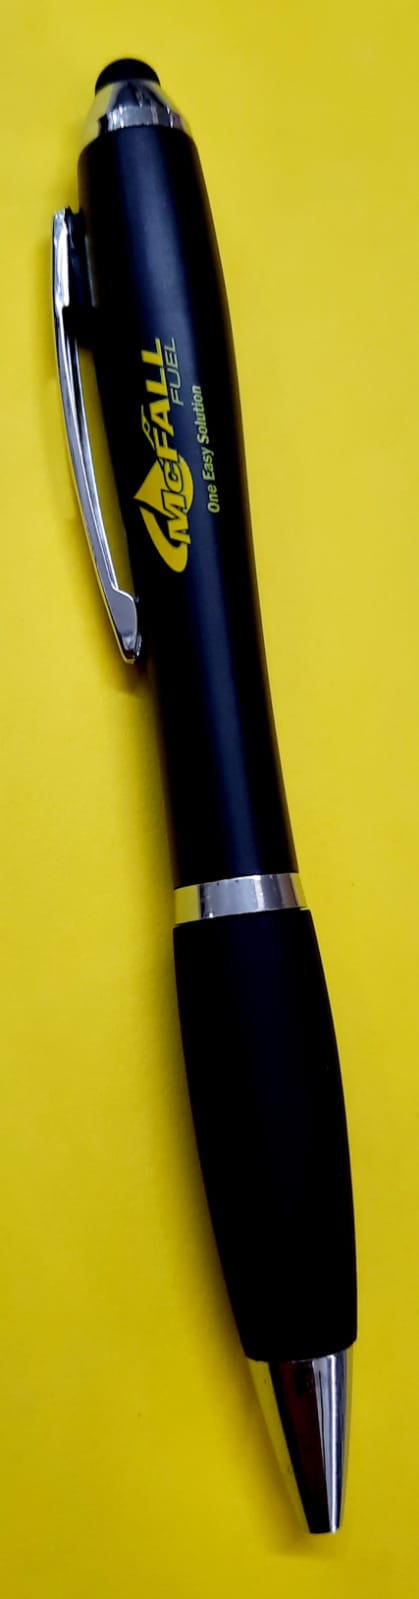 McFall Fuel Branded Pen